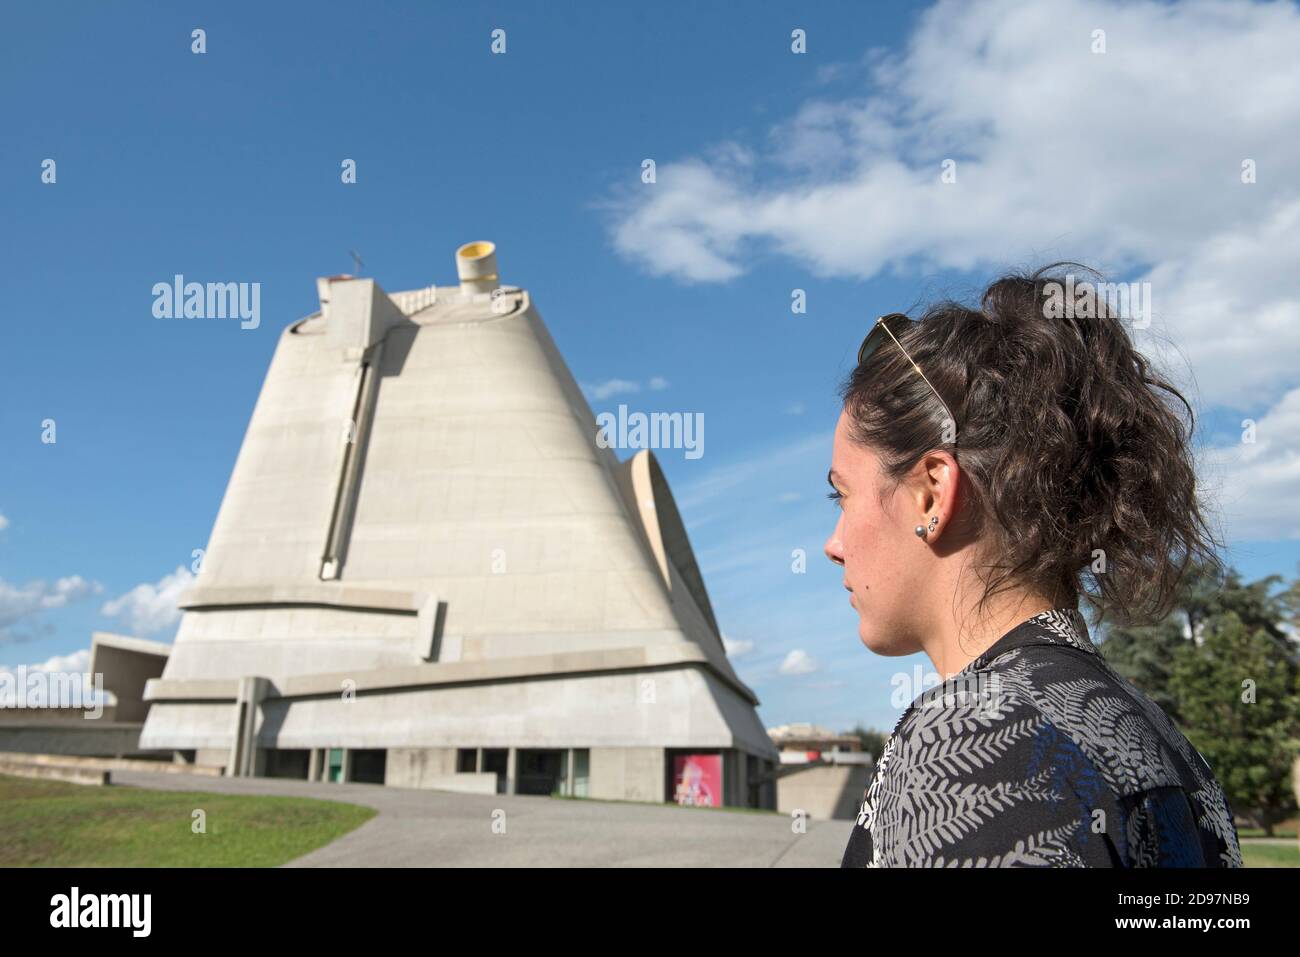 Jeune femme passant devant l'Eglise Saint-Pierre,Site Le Corbusier, Firminy, Saint-Etienne, departement de la Loire, region Auvergne-Rhone-Alpes, Stock Photo